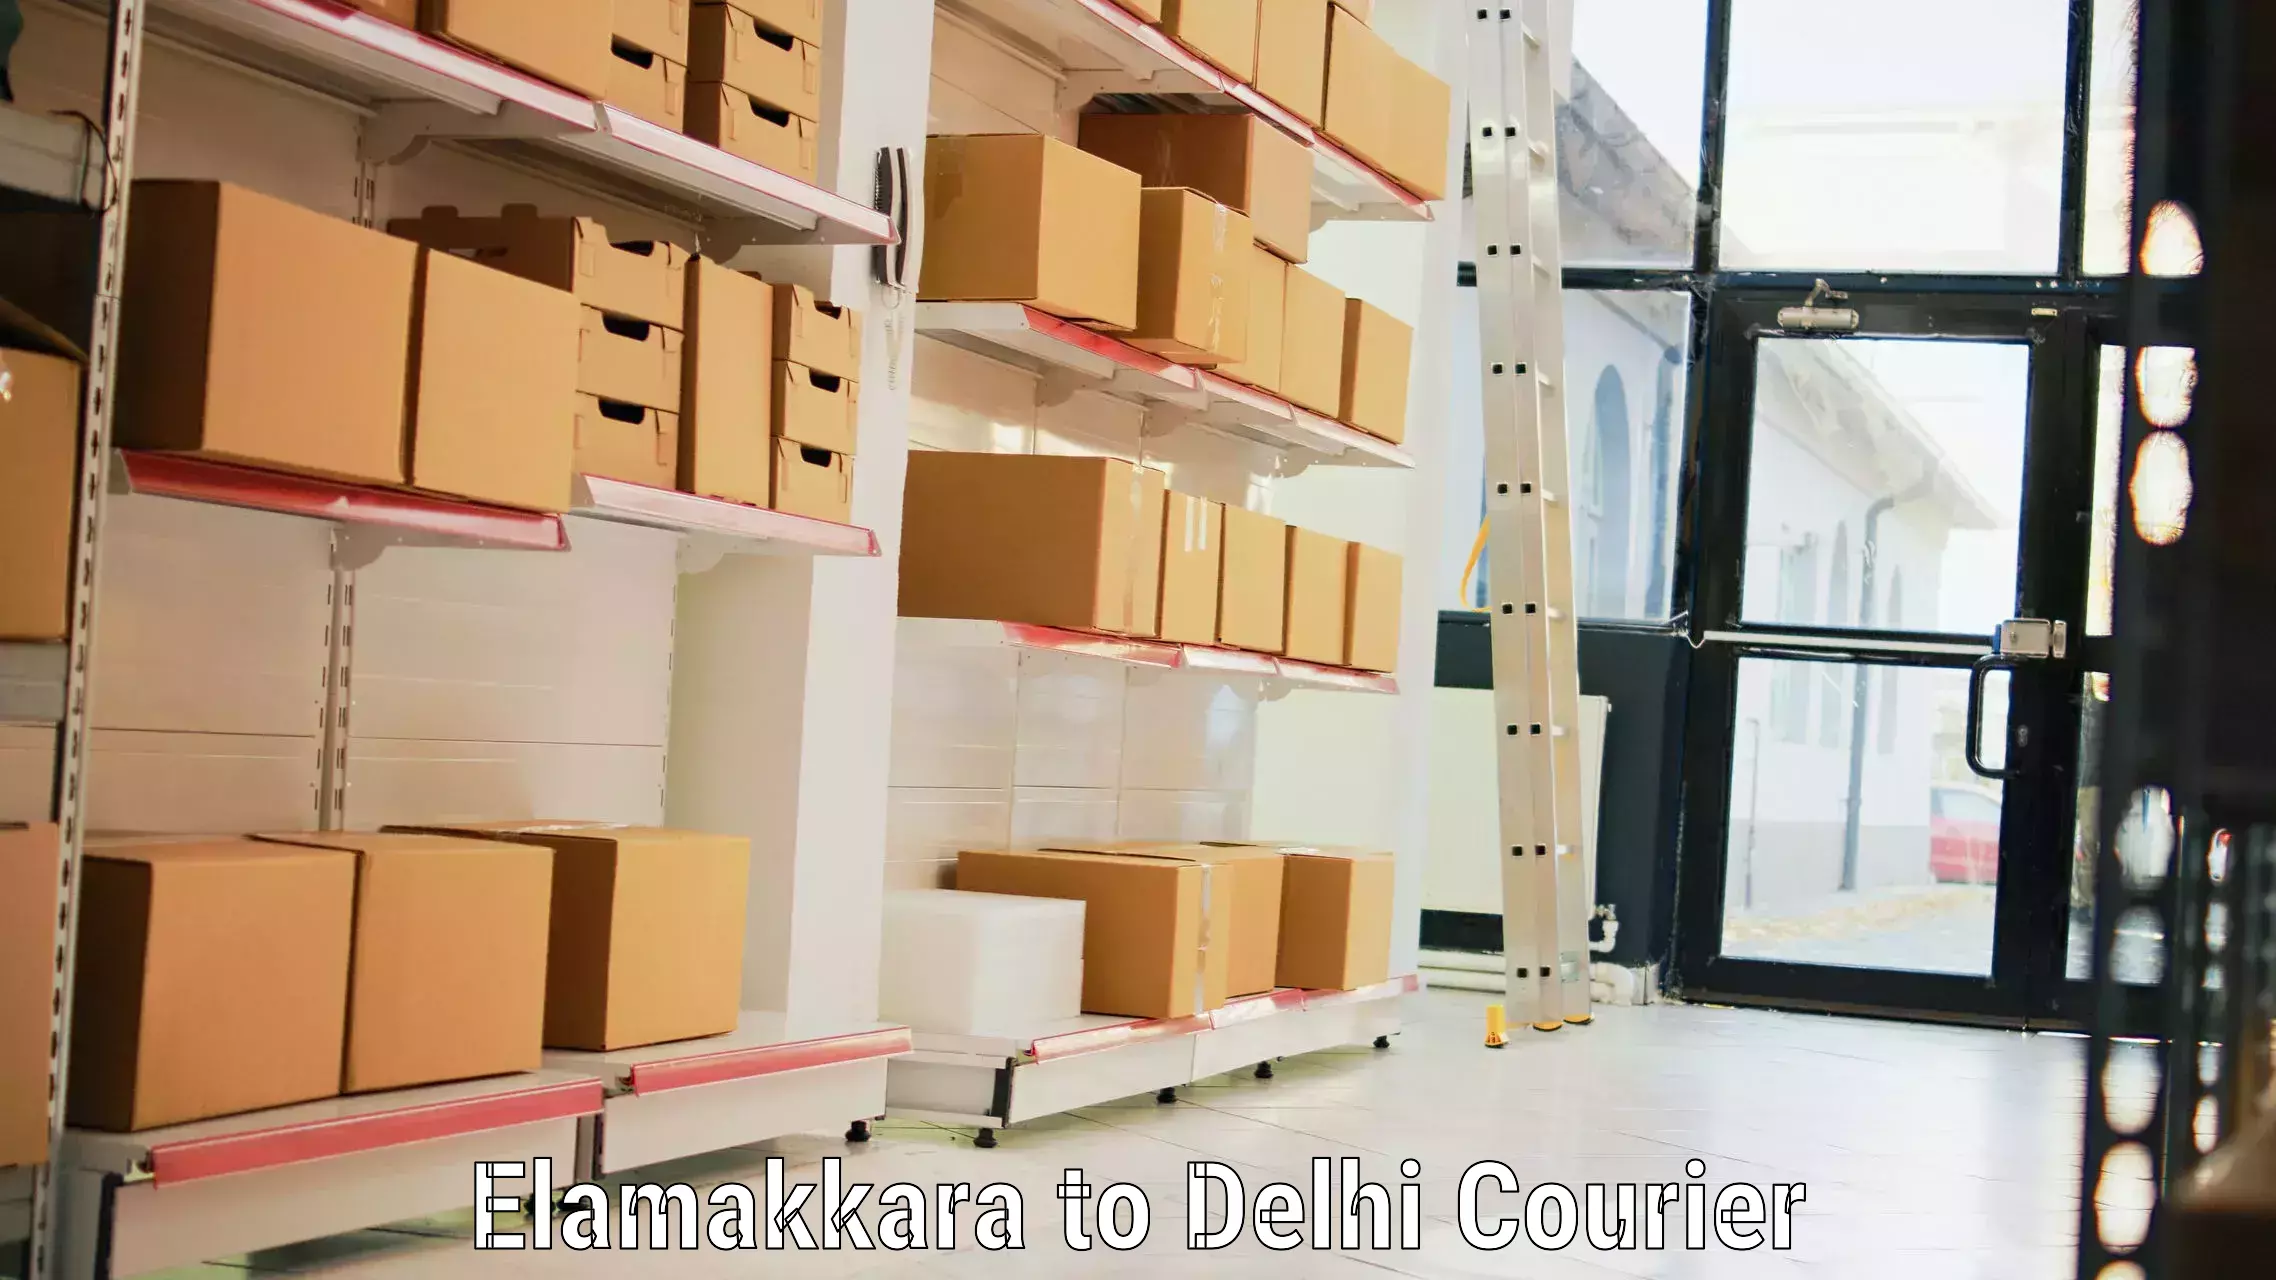 Baggage relocation service Elamakkara to IIT Delhi